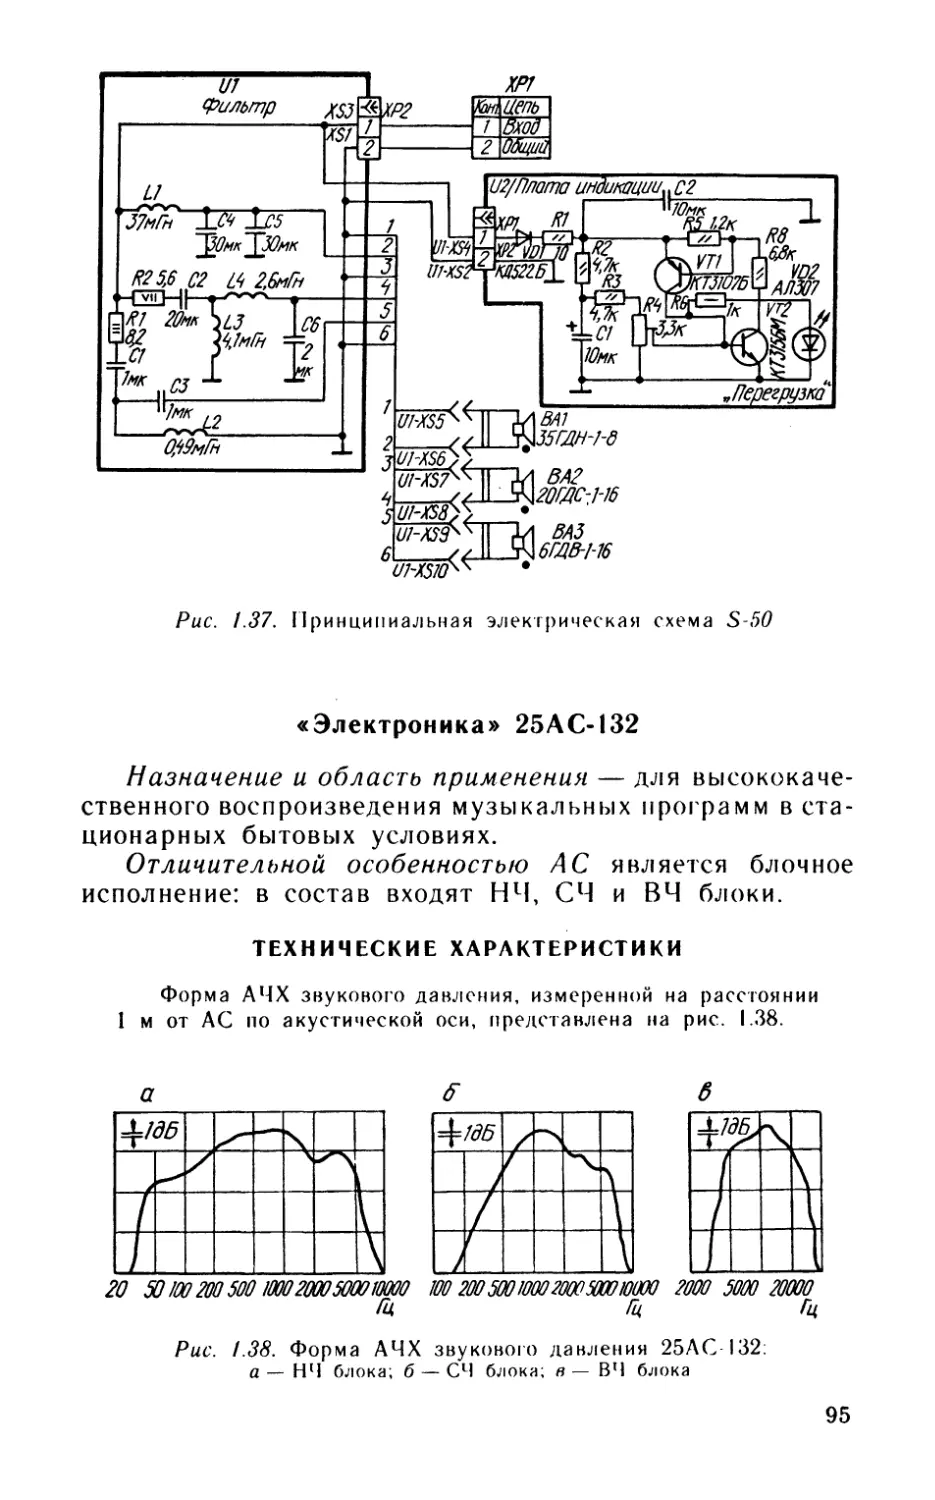 «Электроника» 25АС-132